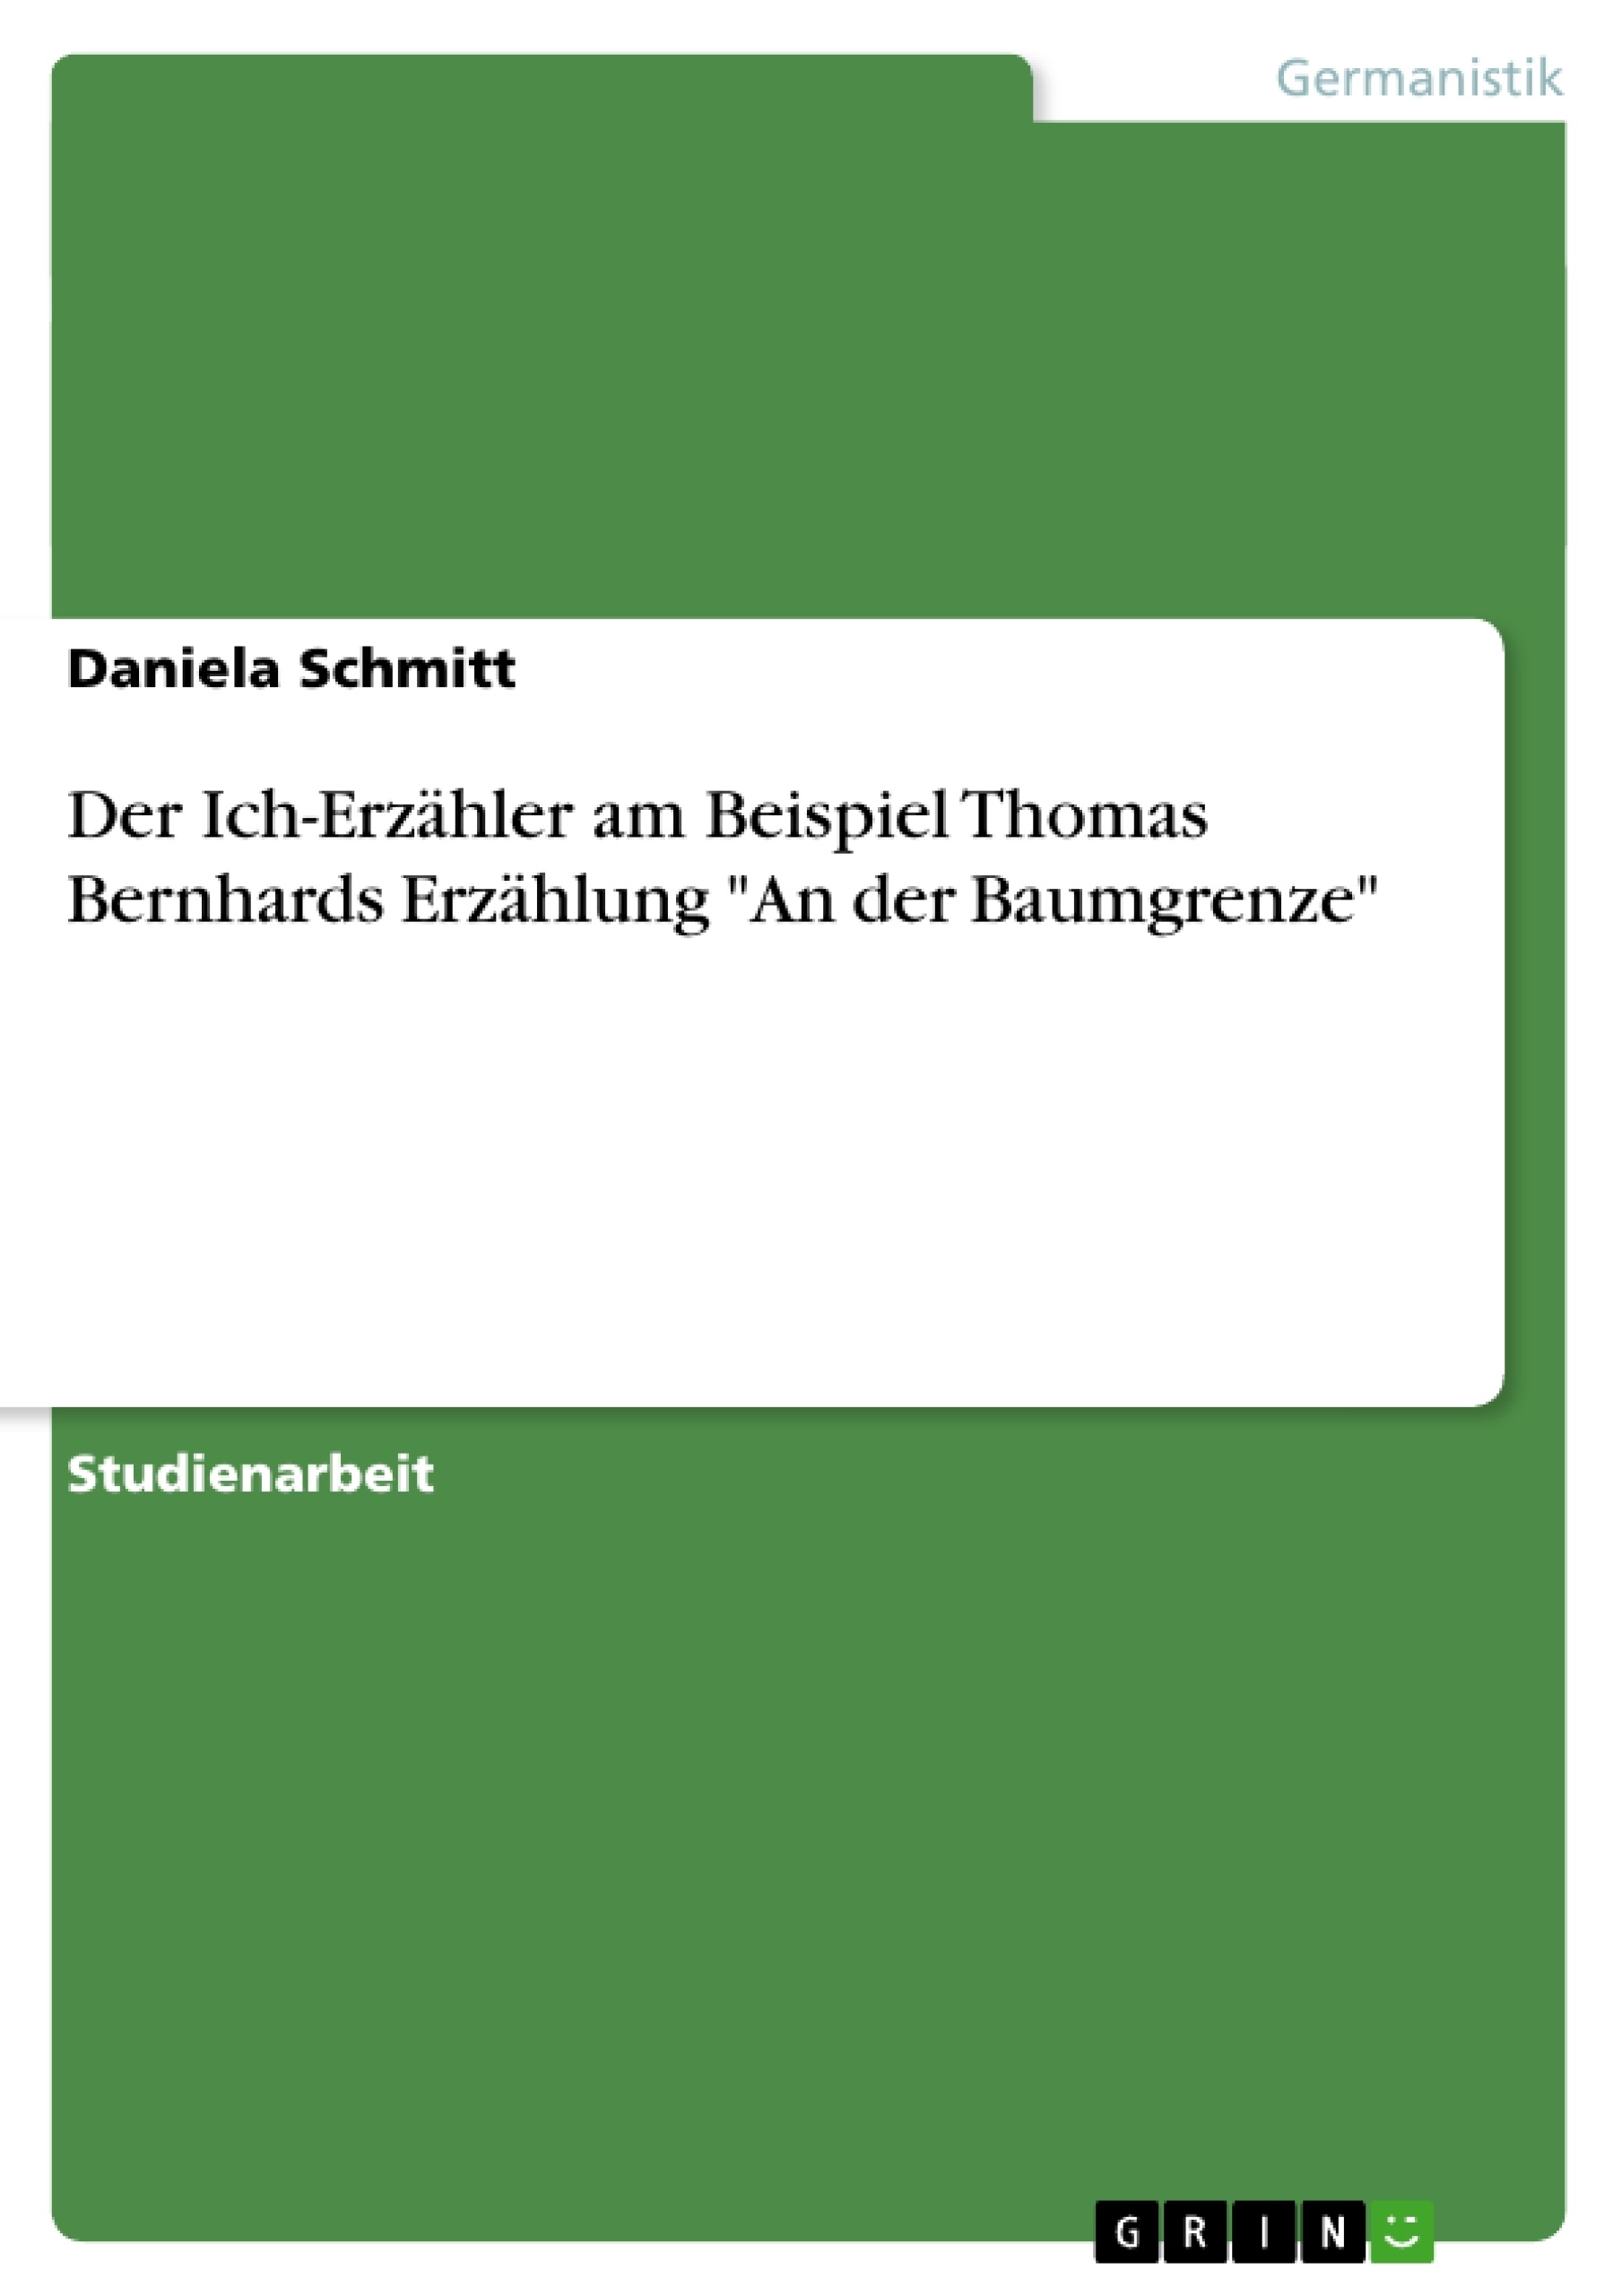 Titre: Der Ich-Erzähler am Beispiel Thomas Bernhards Erzählung "An der Baumgrenze"